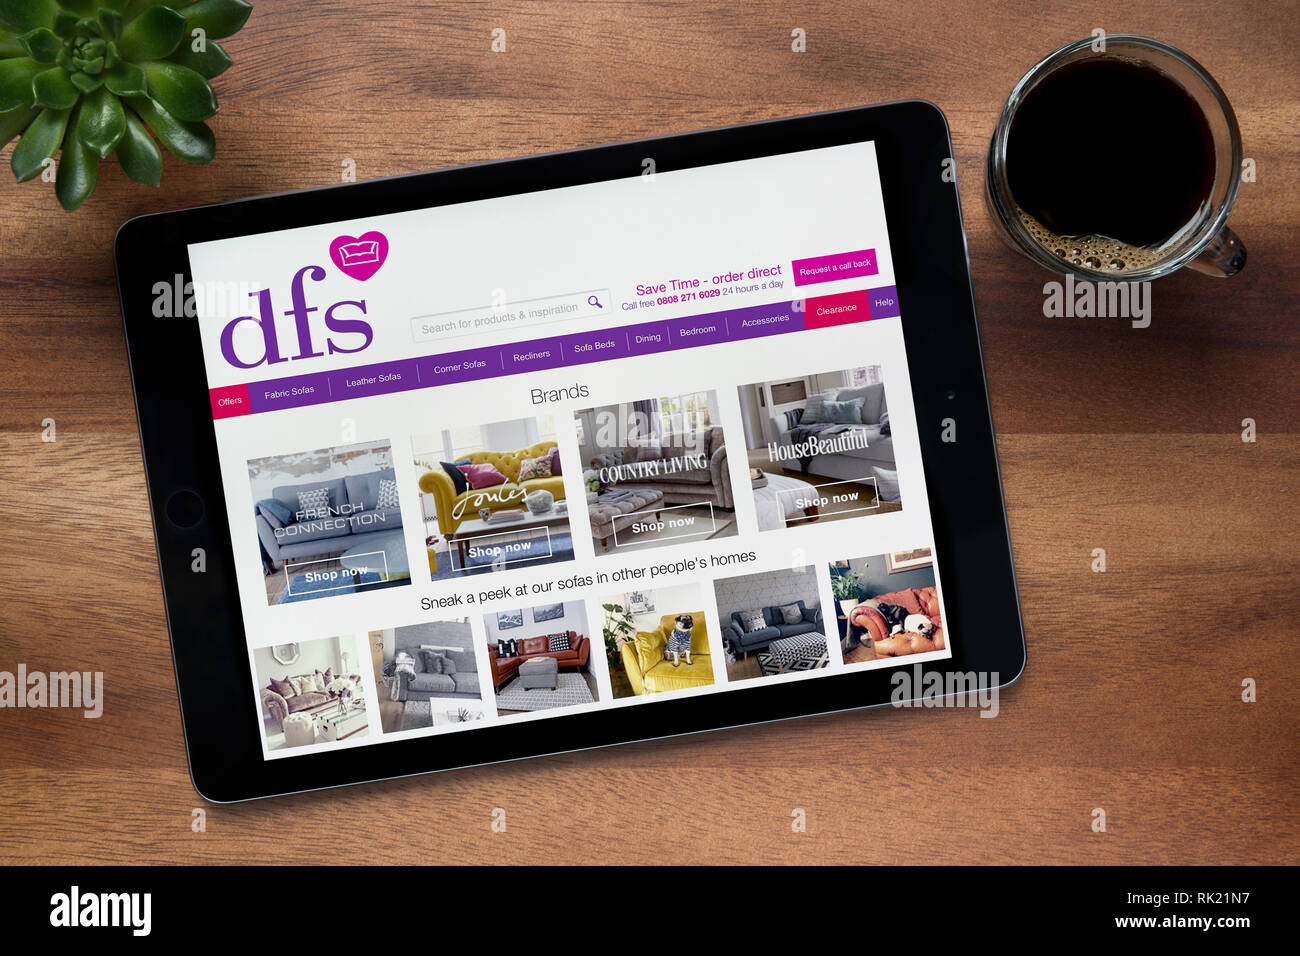 Le site internet de la dsv est vu sur une tablette iPad, sur une table en bois avec une machine à expresso et d'une plante (usage éditorial uniquement). Banque D'Images